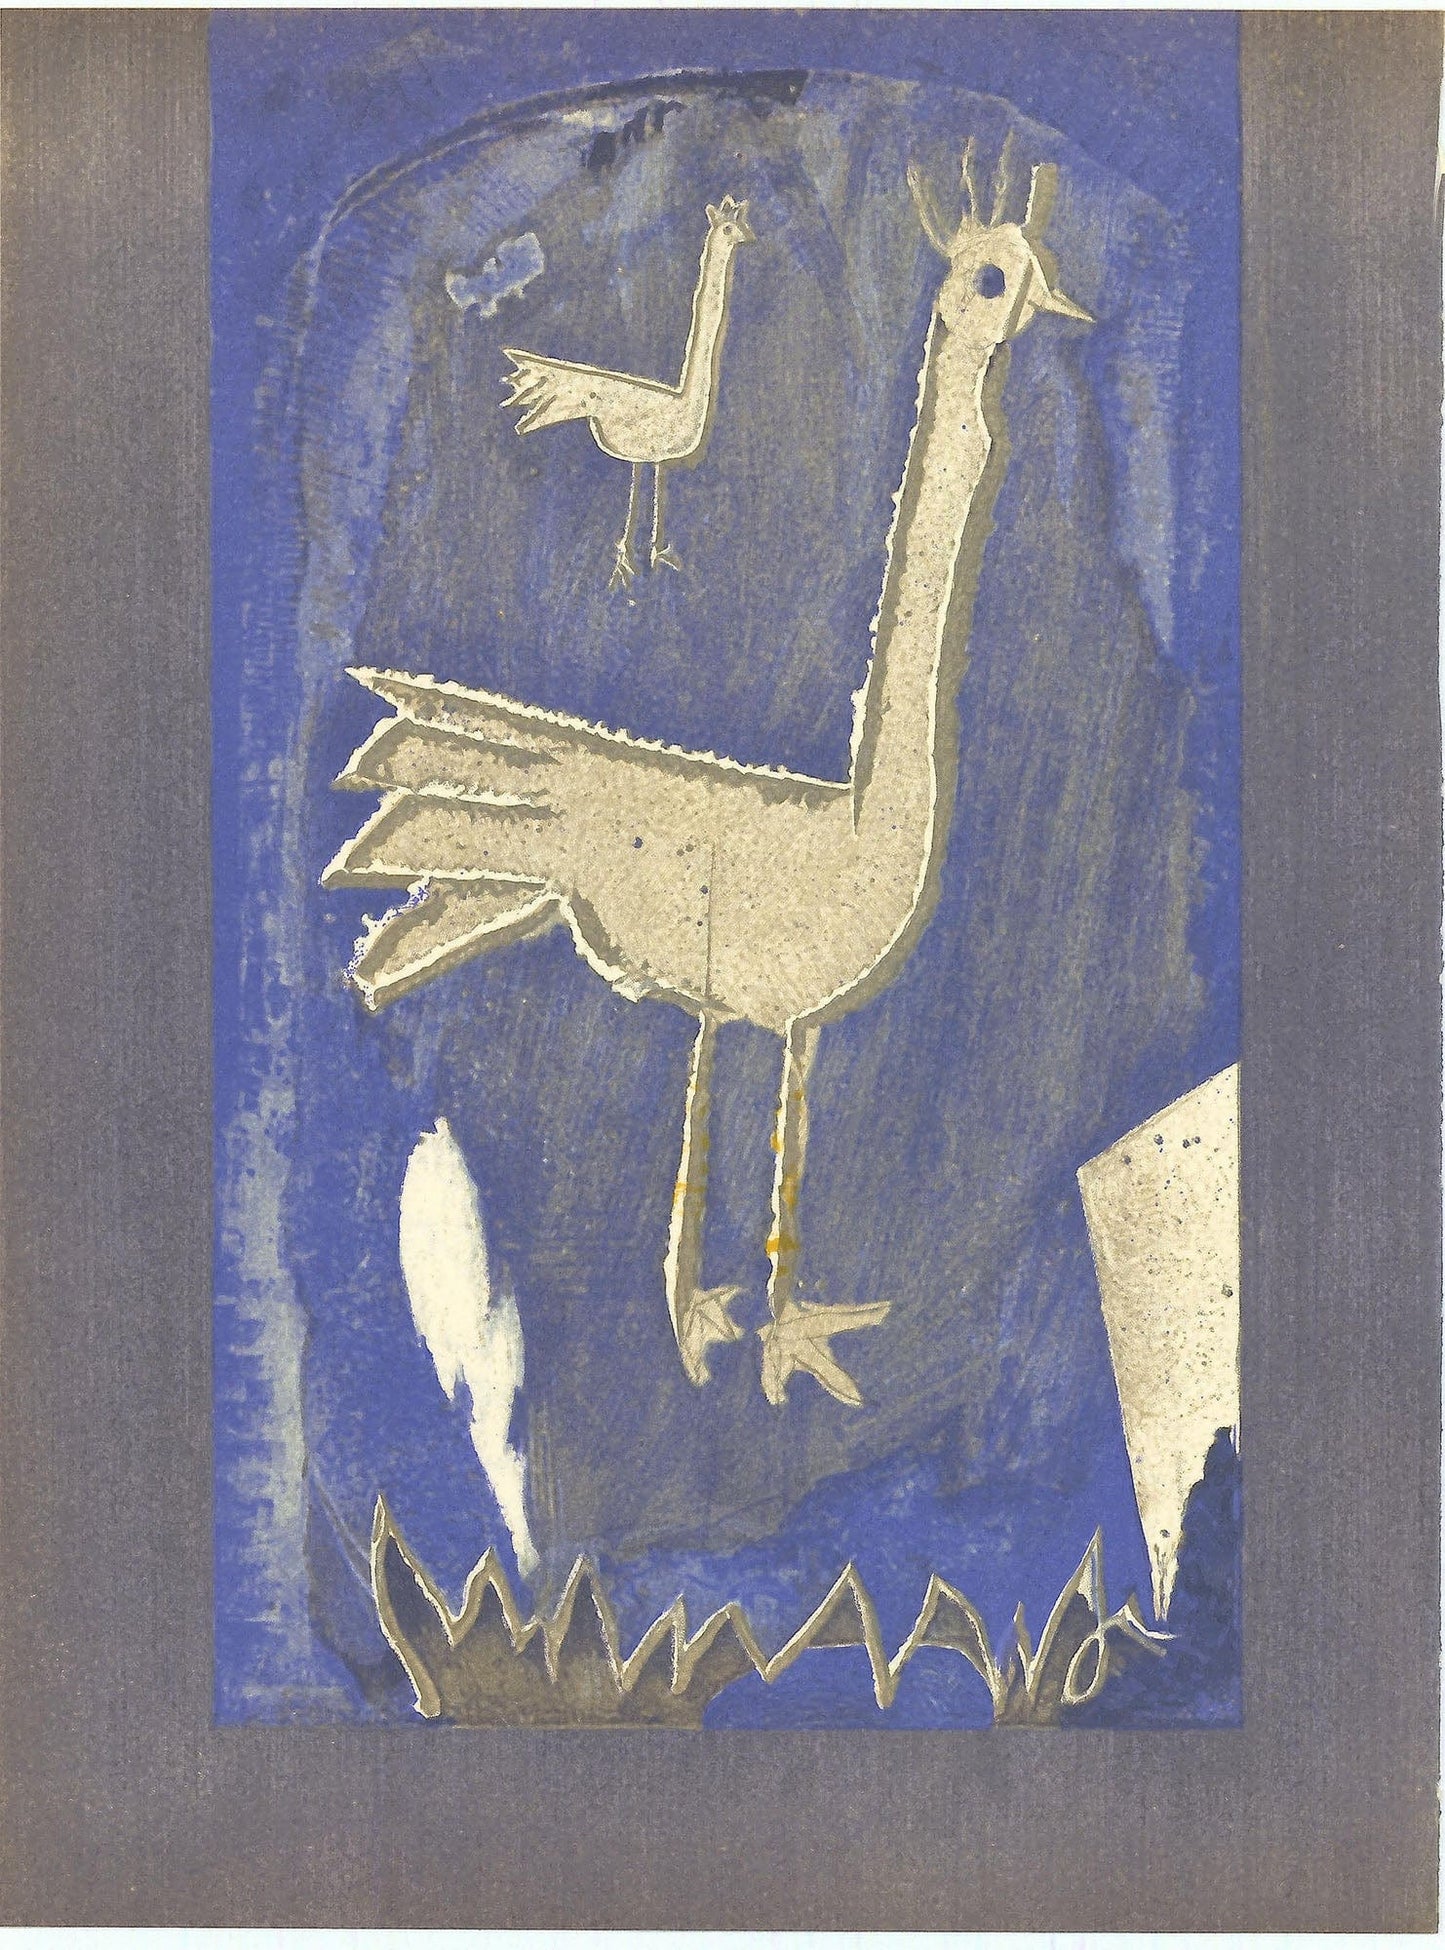 Georges Braque, "Frontspiece" ZOOM Vol. 8 No. 31 ET 32 lithograph verve